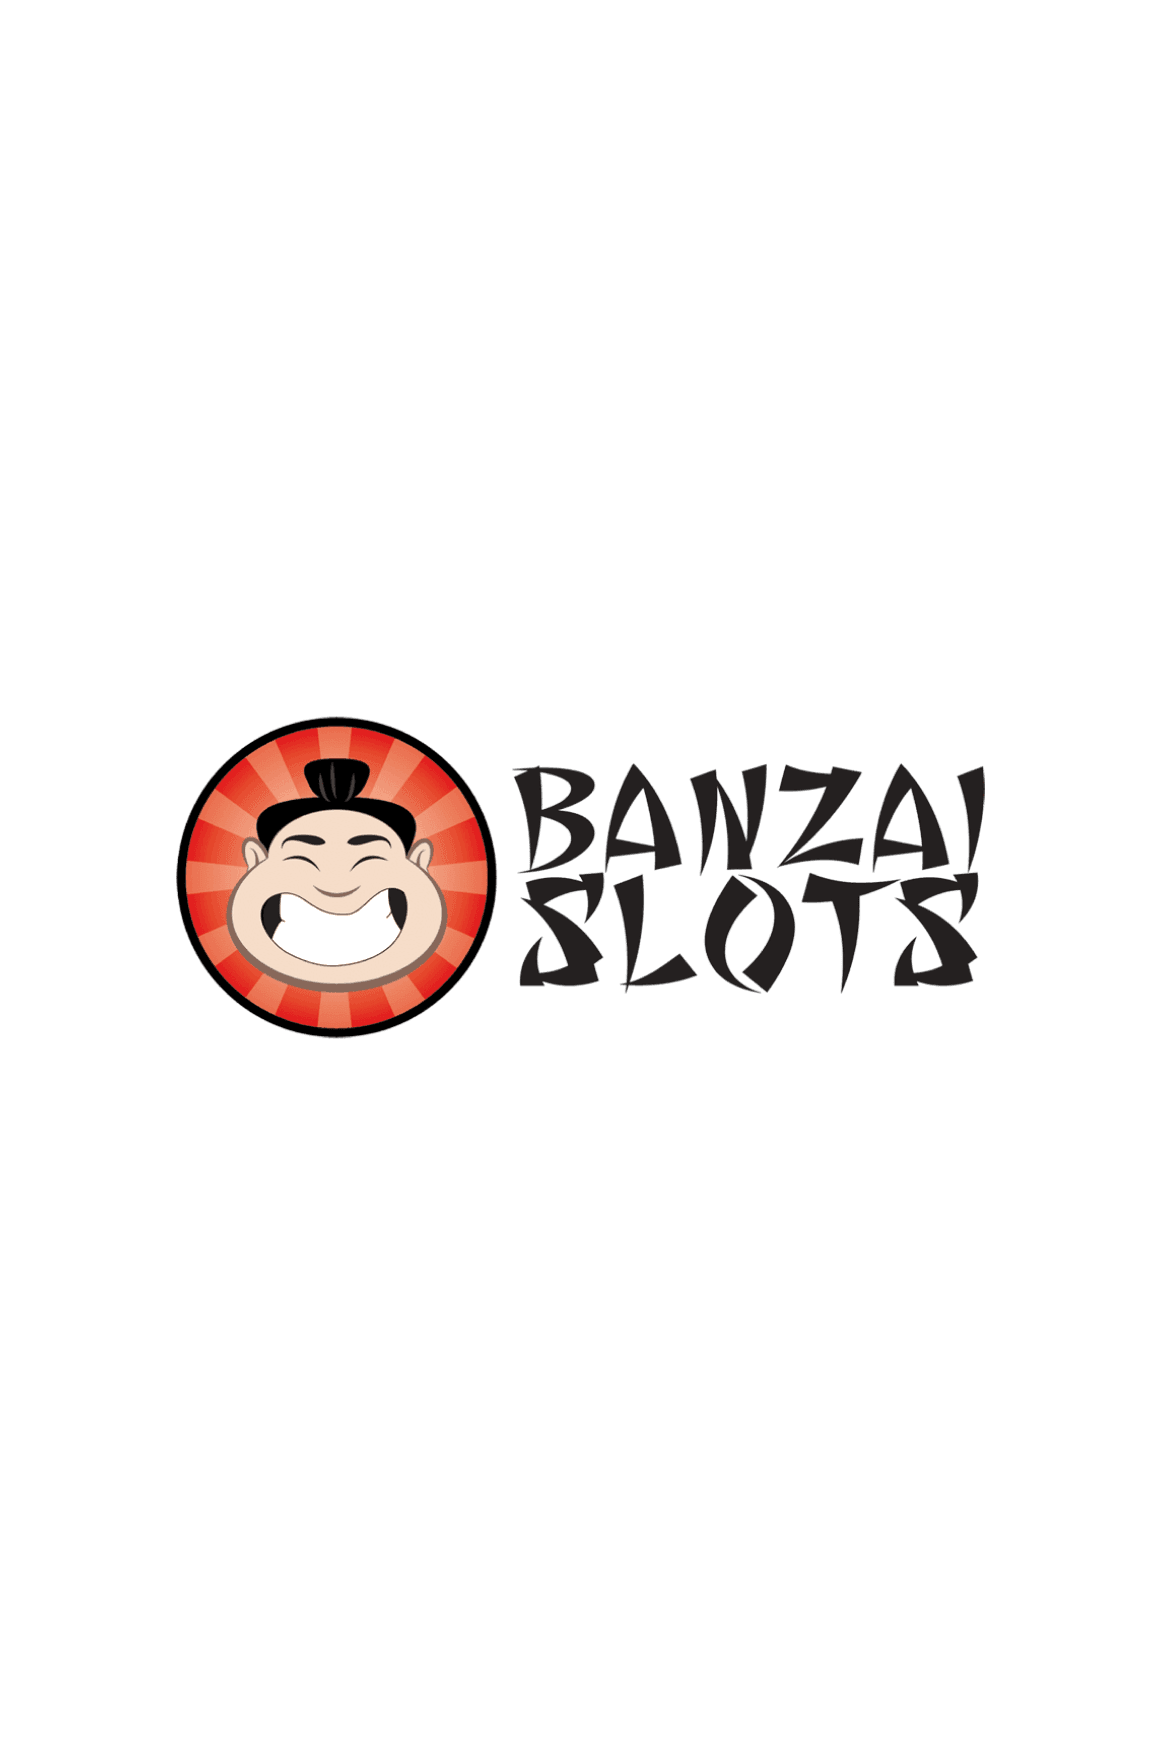 Banzaislots